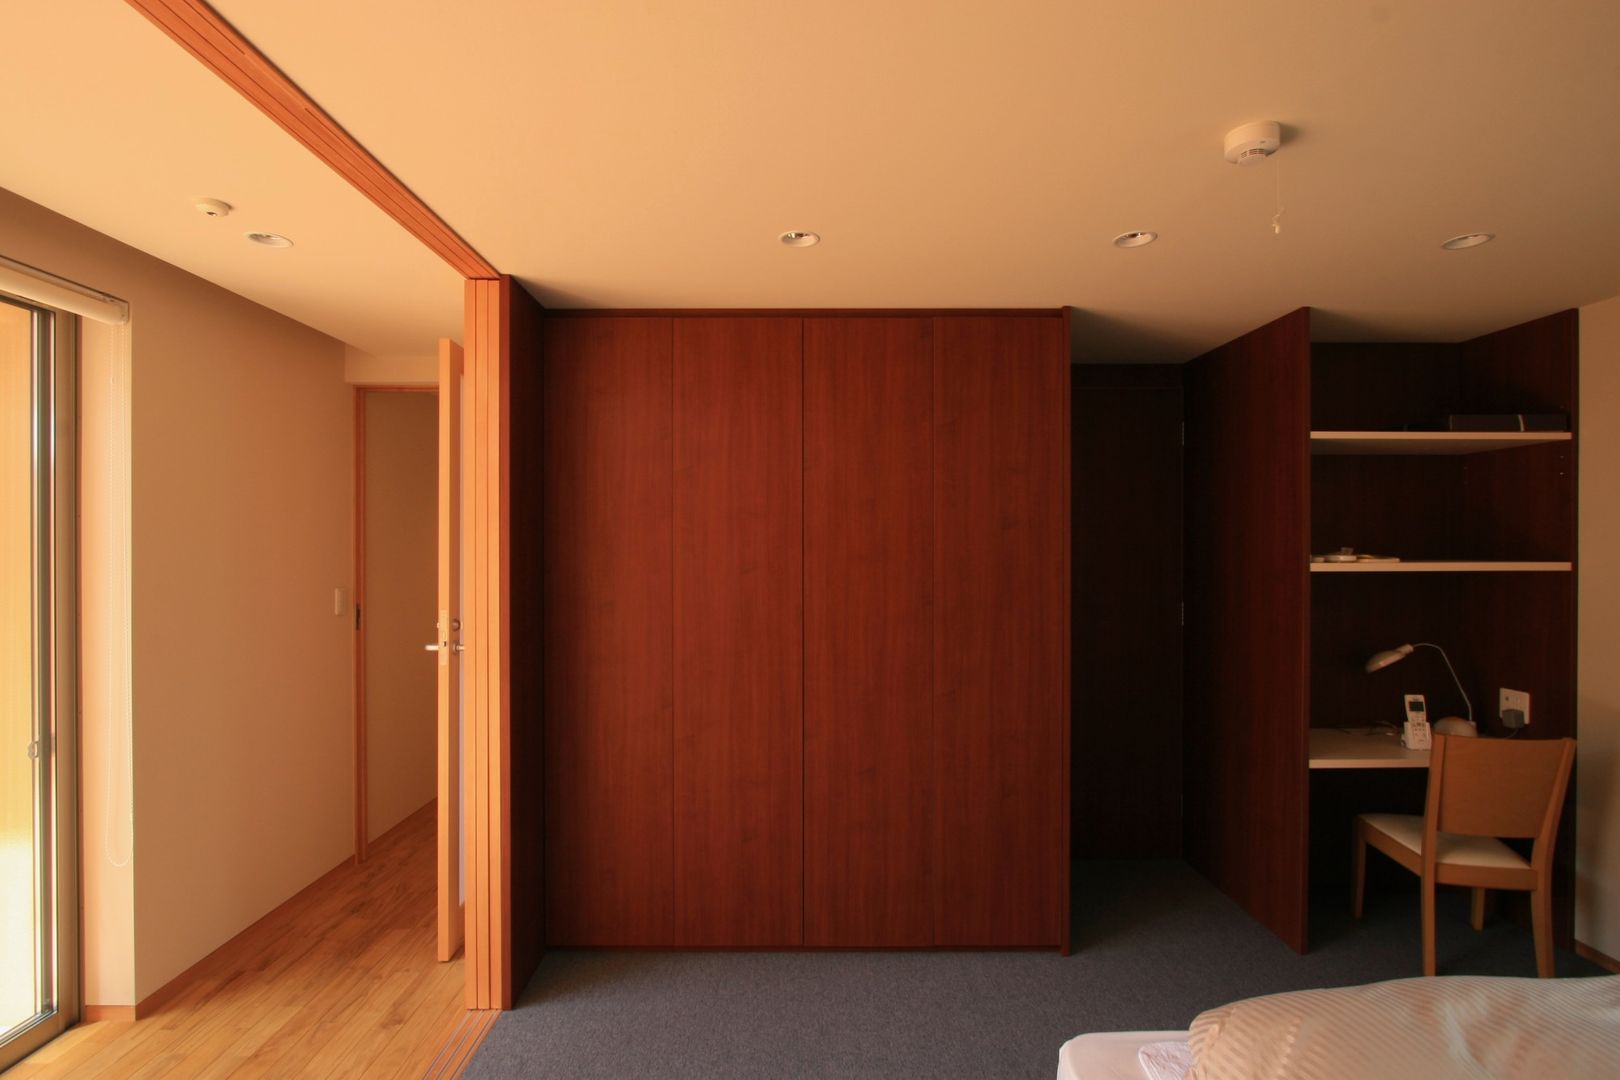 ホテルのような寝室 TOGODESIGN 北欧スタイルの 寝室 合板（ベニヤ板） 木目調 寝室,ベッドルーム,クローゼット,大きなクローゼット,広い寝室,広いベッドルーム